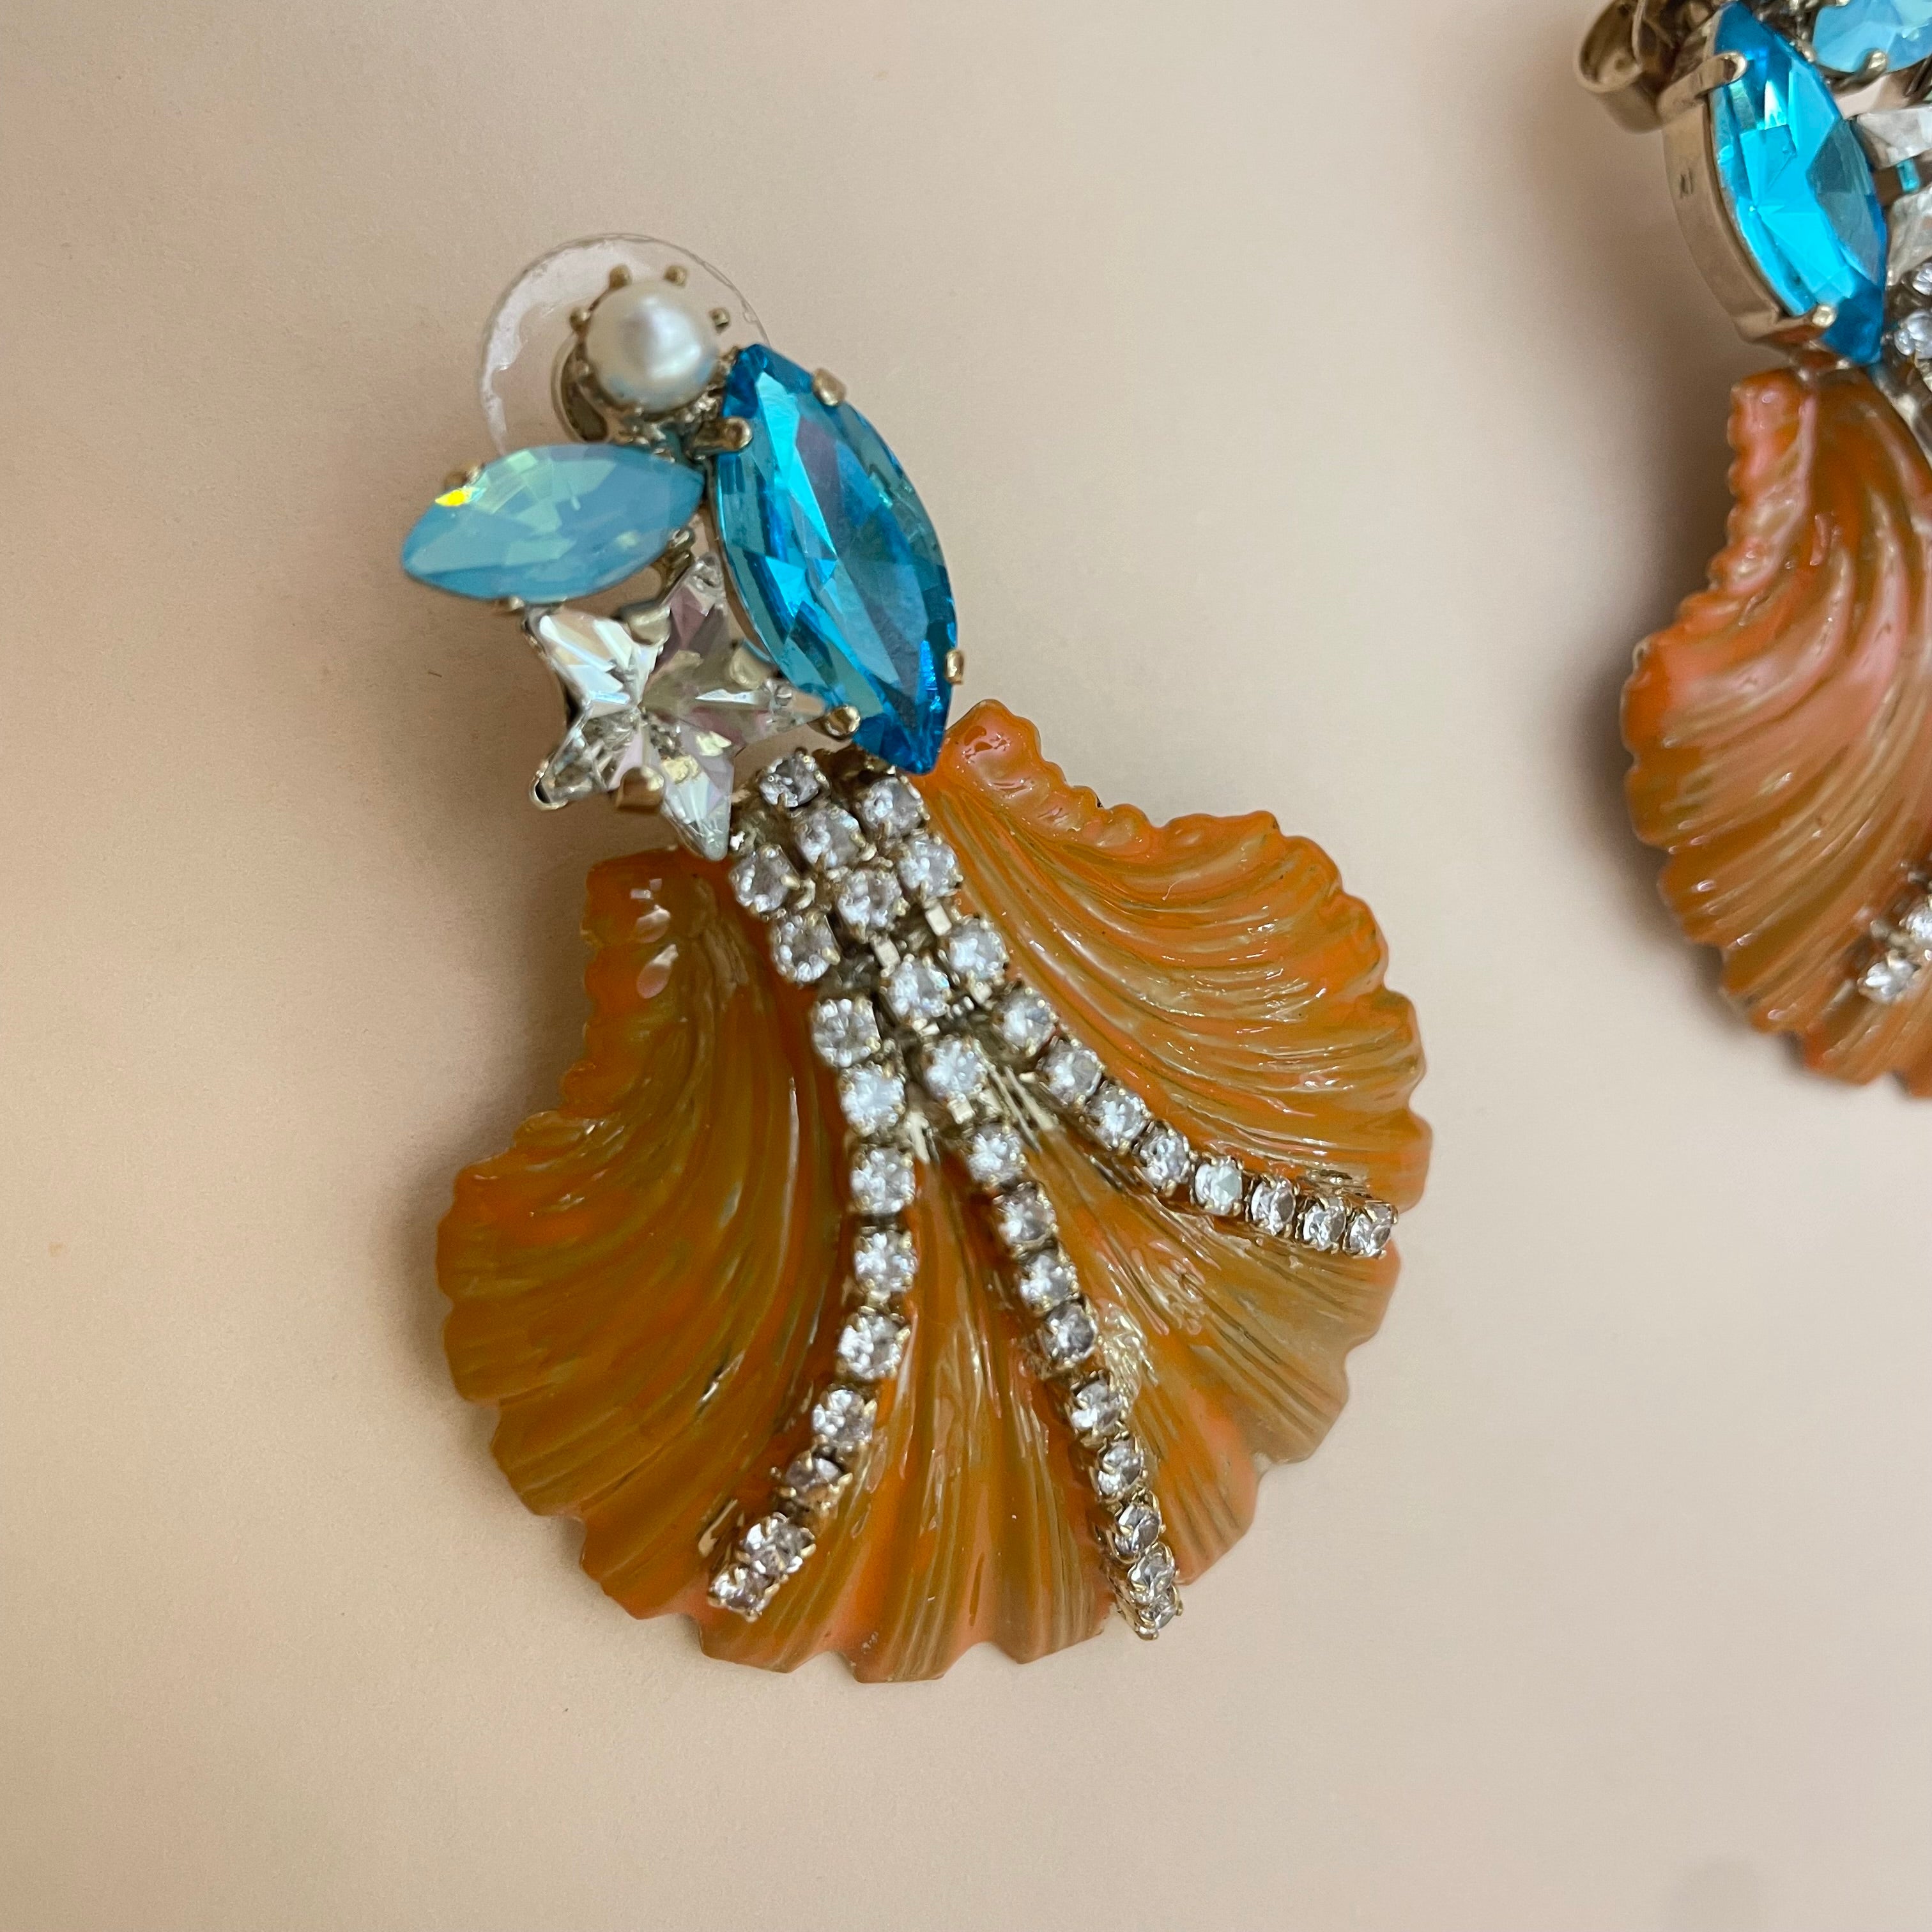 Stunning shell earrings